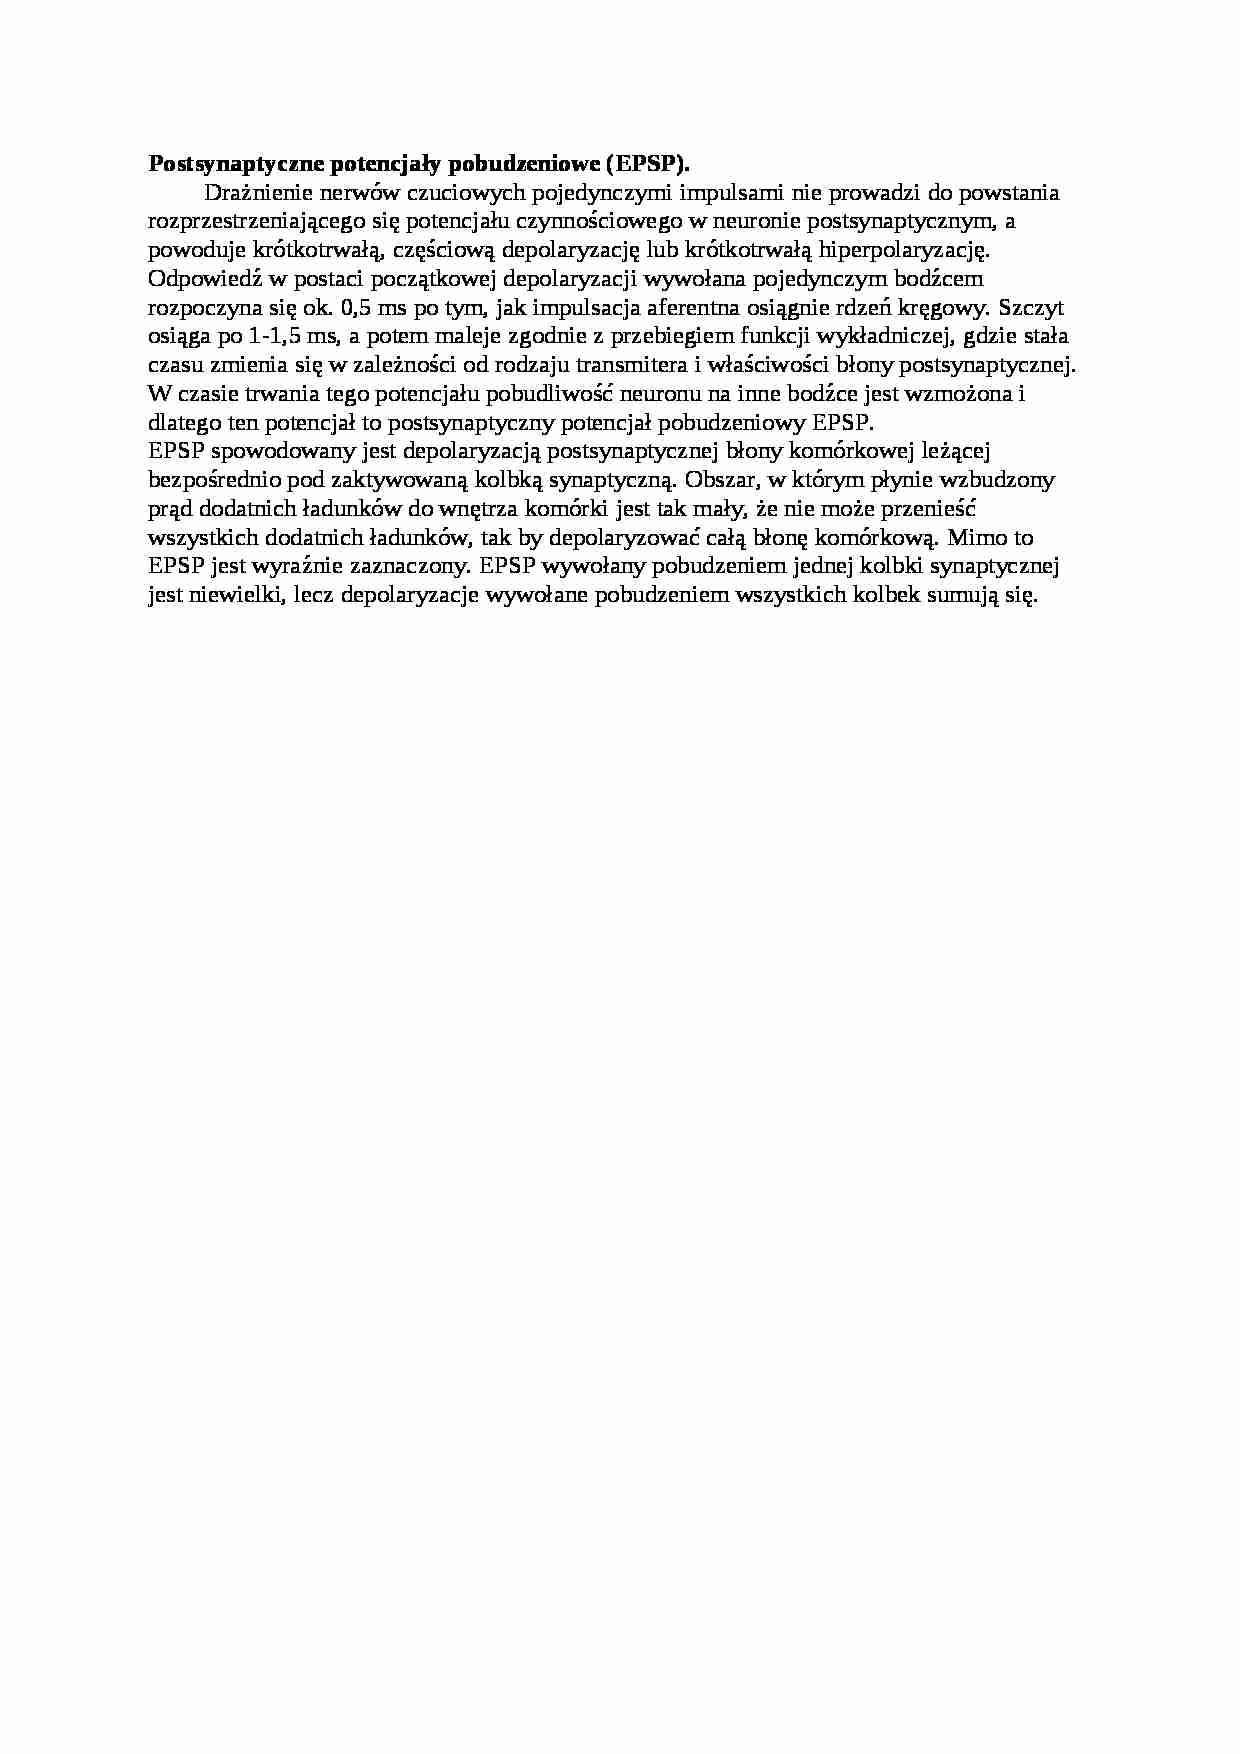 Opracowanie  - postsynaptyczne potencjały pobudzeniowe (EPSP), sem I-IV - strona 1